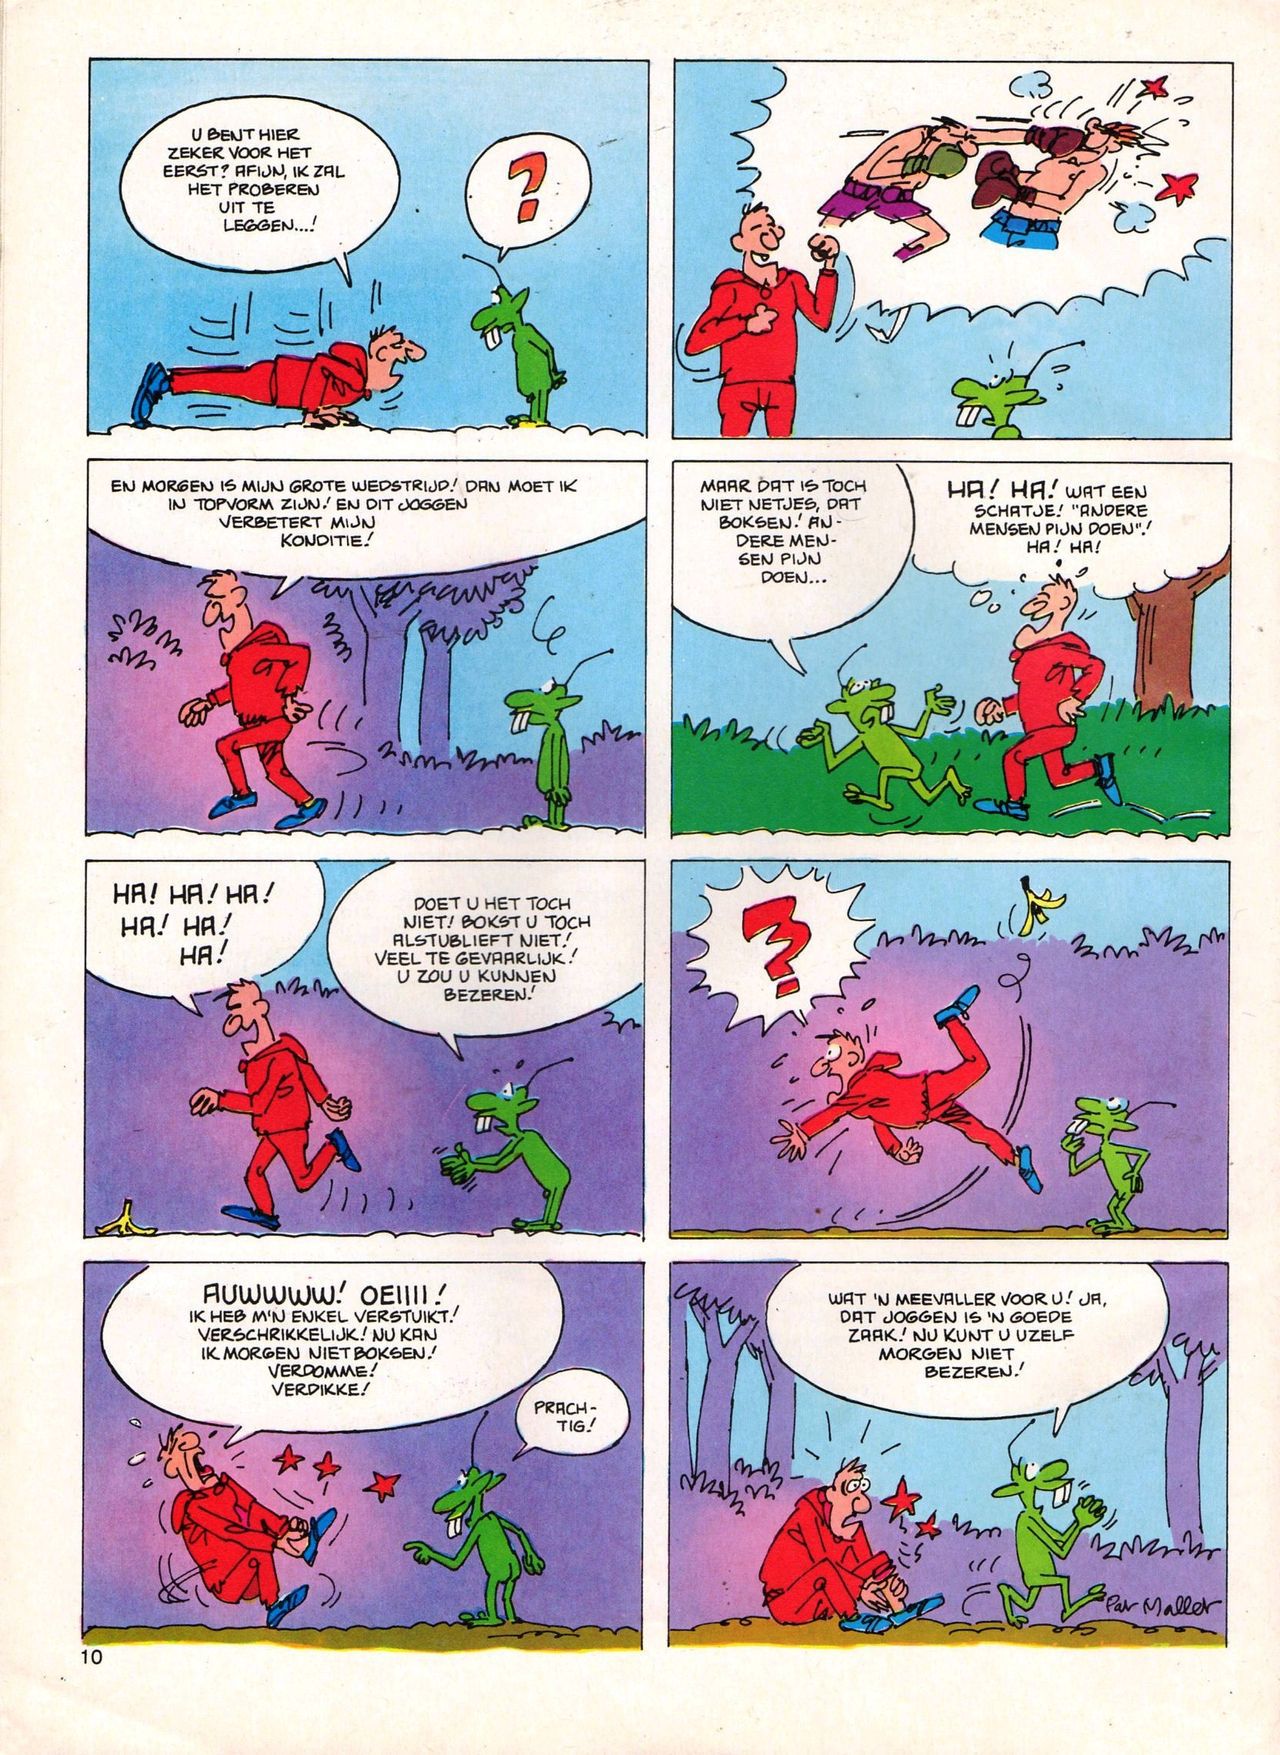 Het Is Groen En Het.. - 04 - Mag Ik Die Ballen.. OH, PARDON! (Dutch) Een oude humoristische serie van Pat Mallet 10